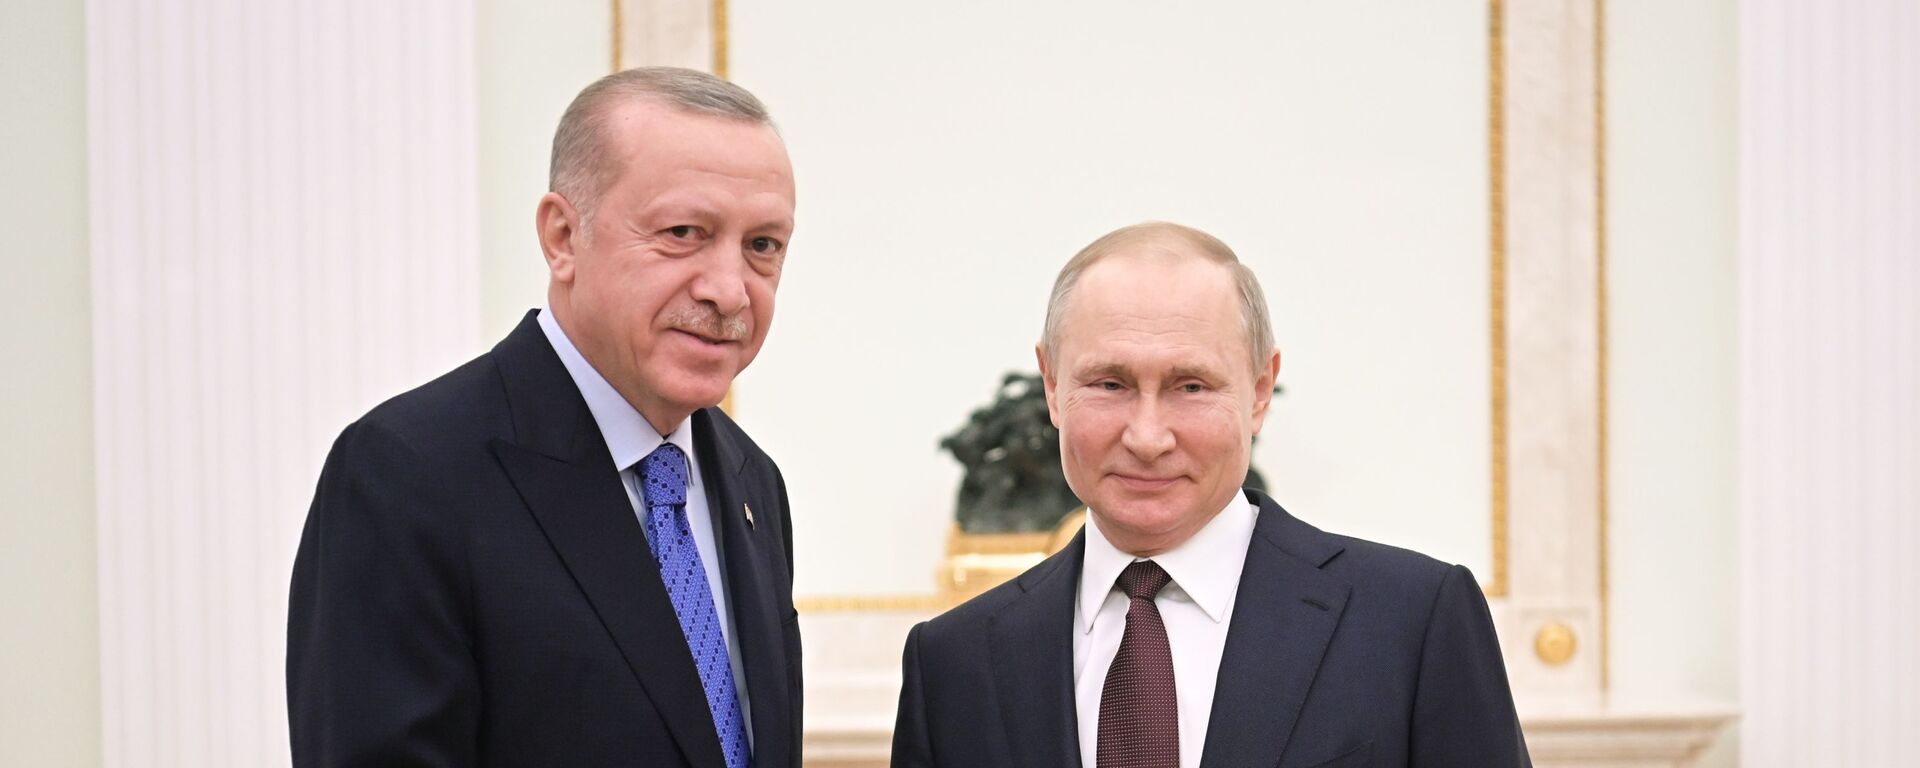 Президент РФ В. Путин встретился с президентом Турции Р. Эрдоганом - Sputnik Таджикистан, 1920, 24.10.2020